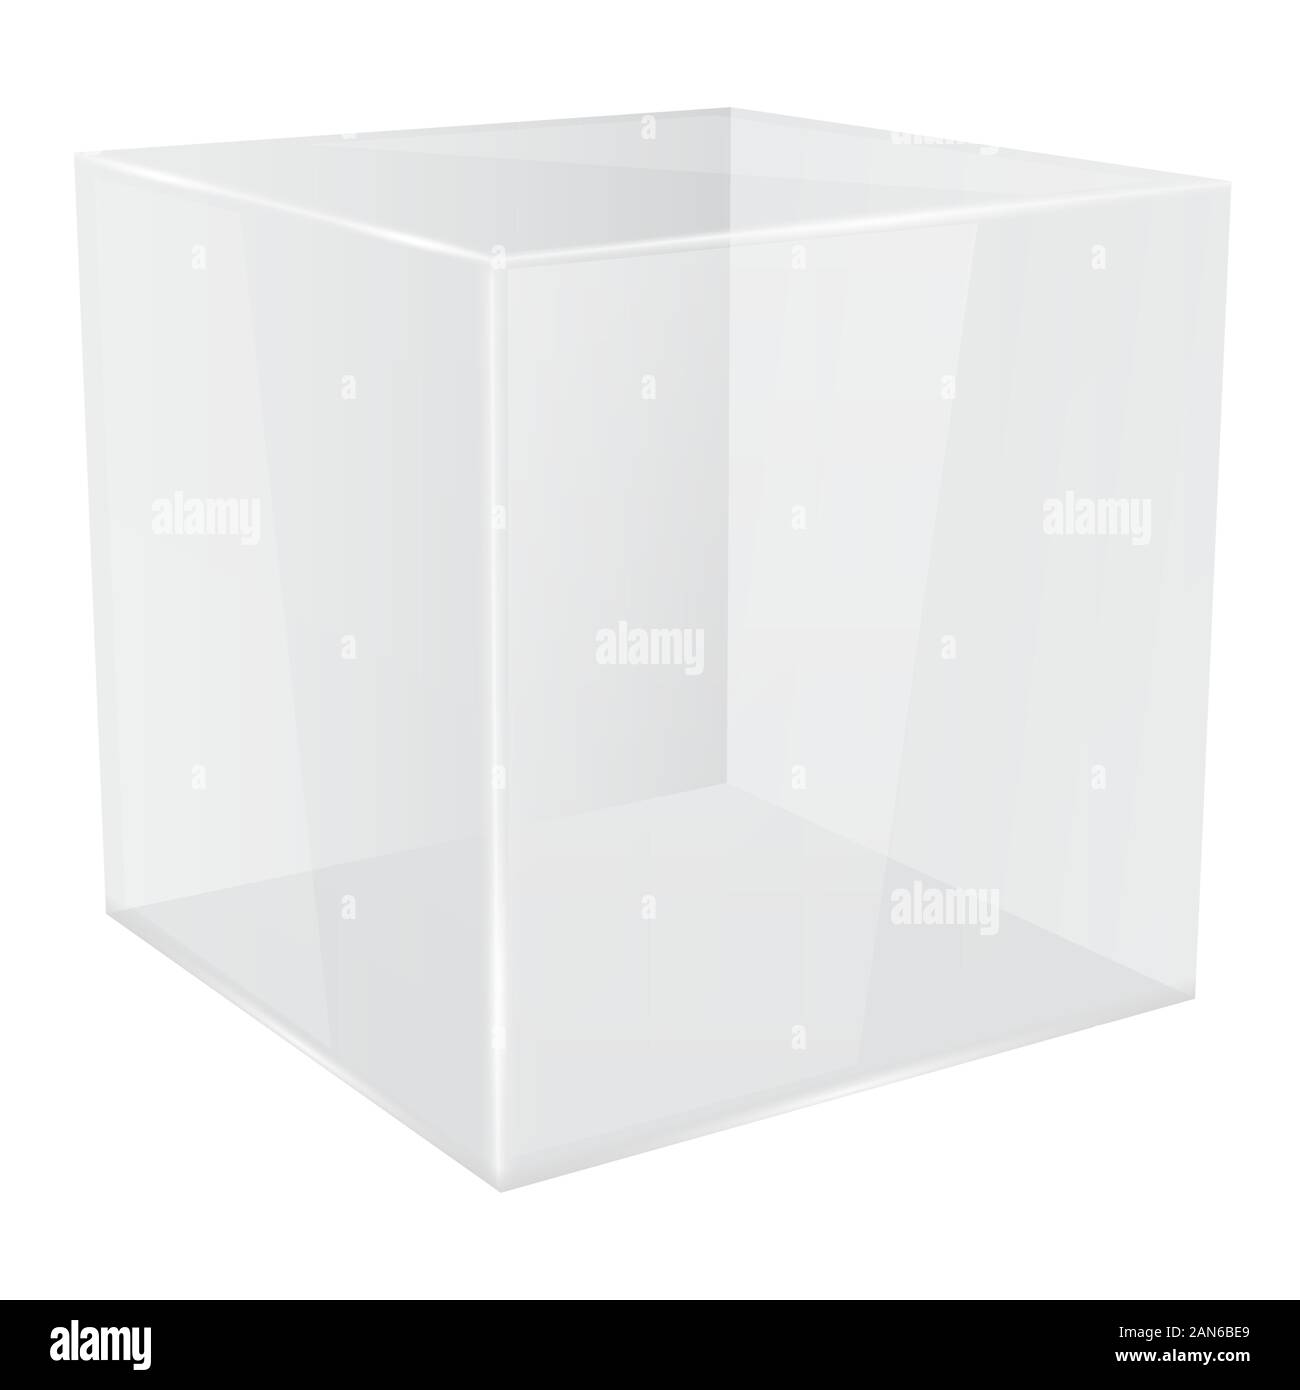 transparent cube glass geometrical plexiglass Stock Photo - Alamy